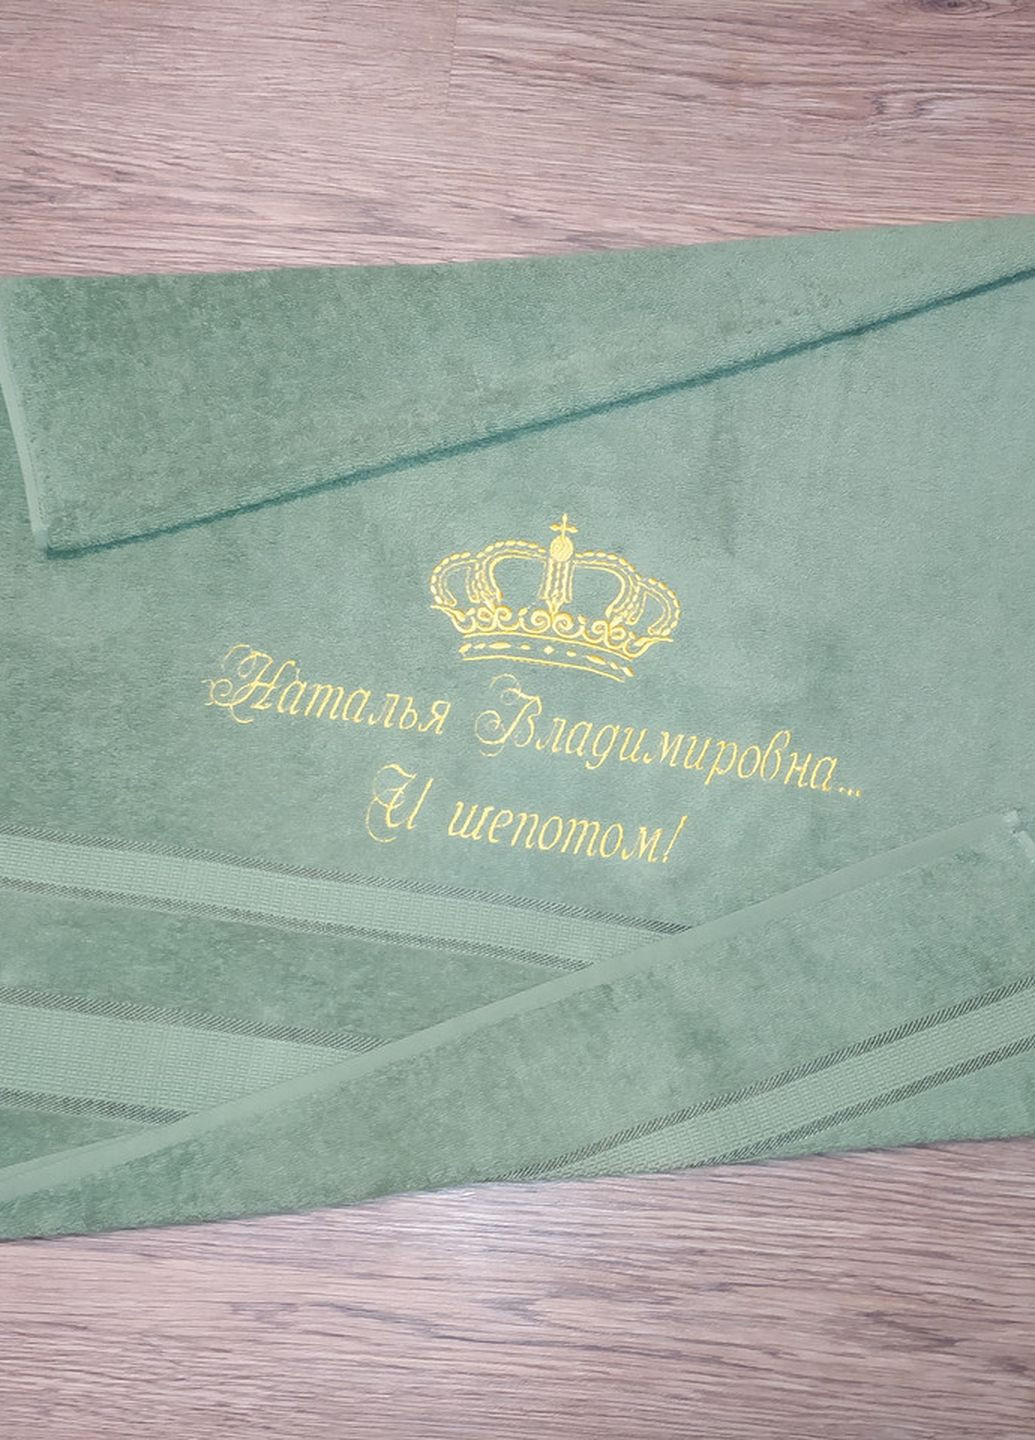 No Brand полотенце с именной вышивкой махровое банное 70*140 оливковый наталья 00152 однотонный оливковый производство - Украина